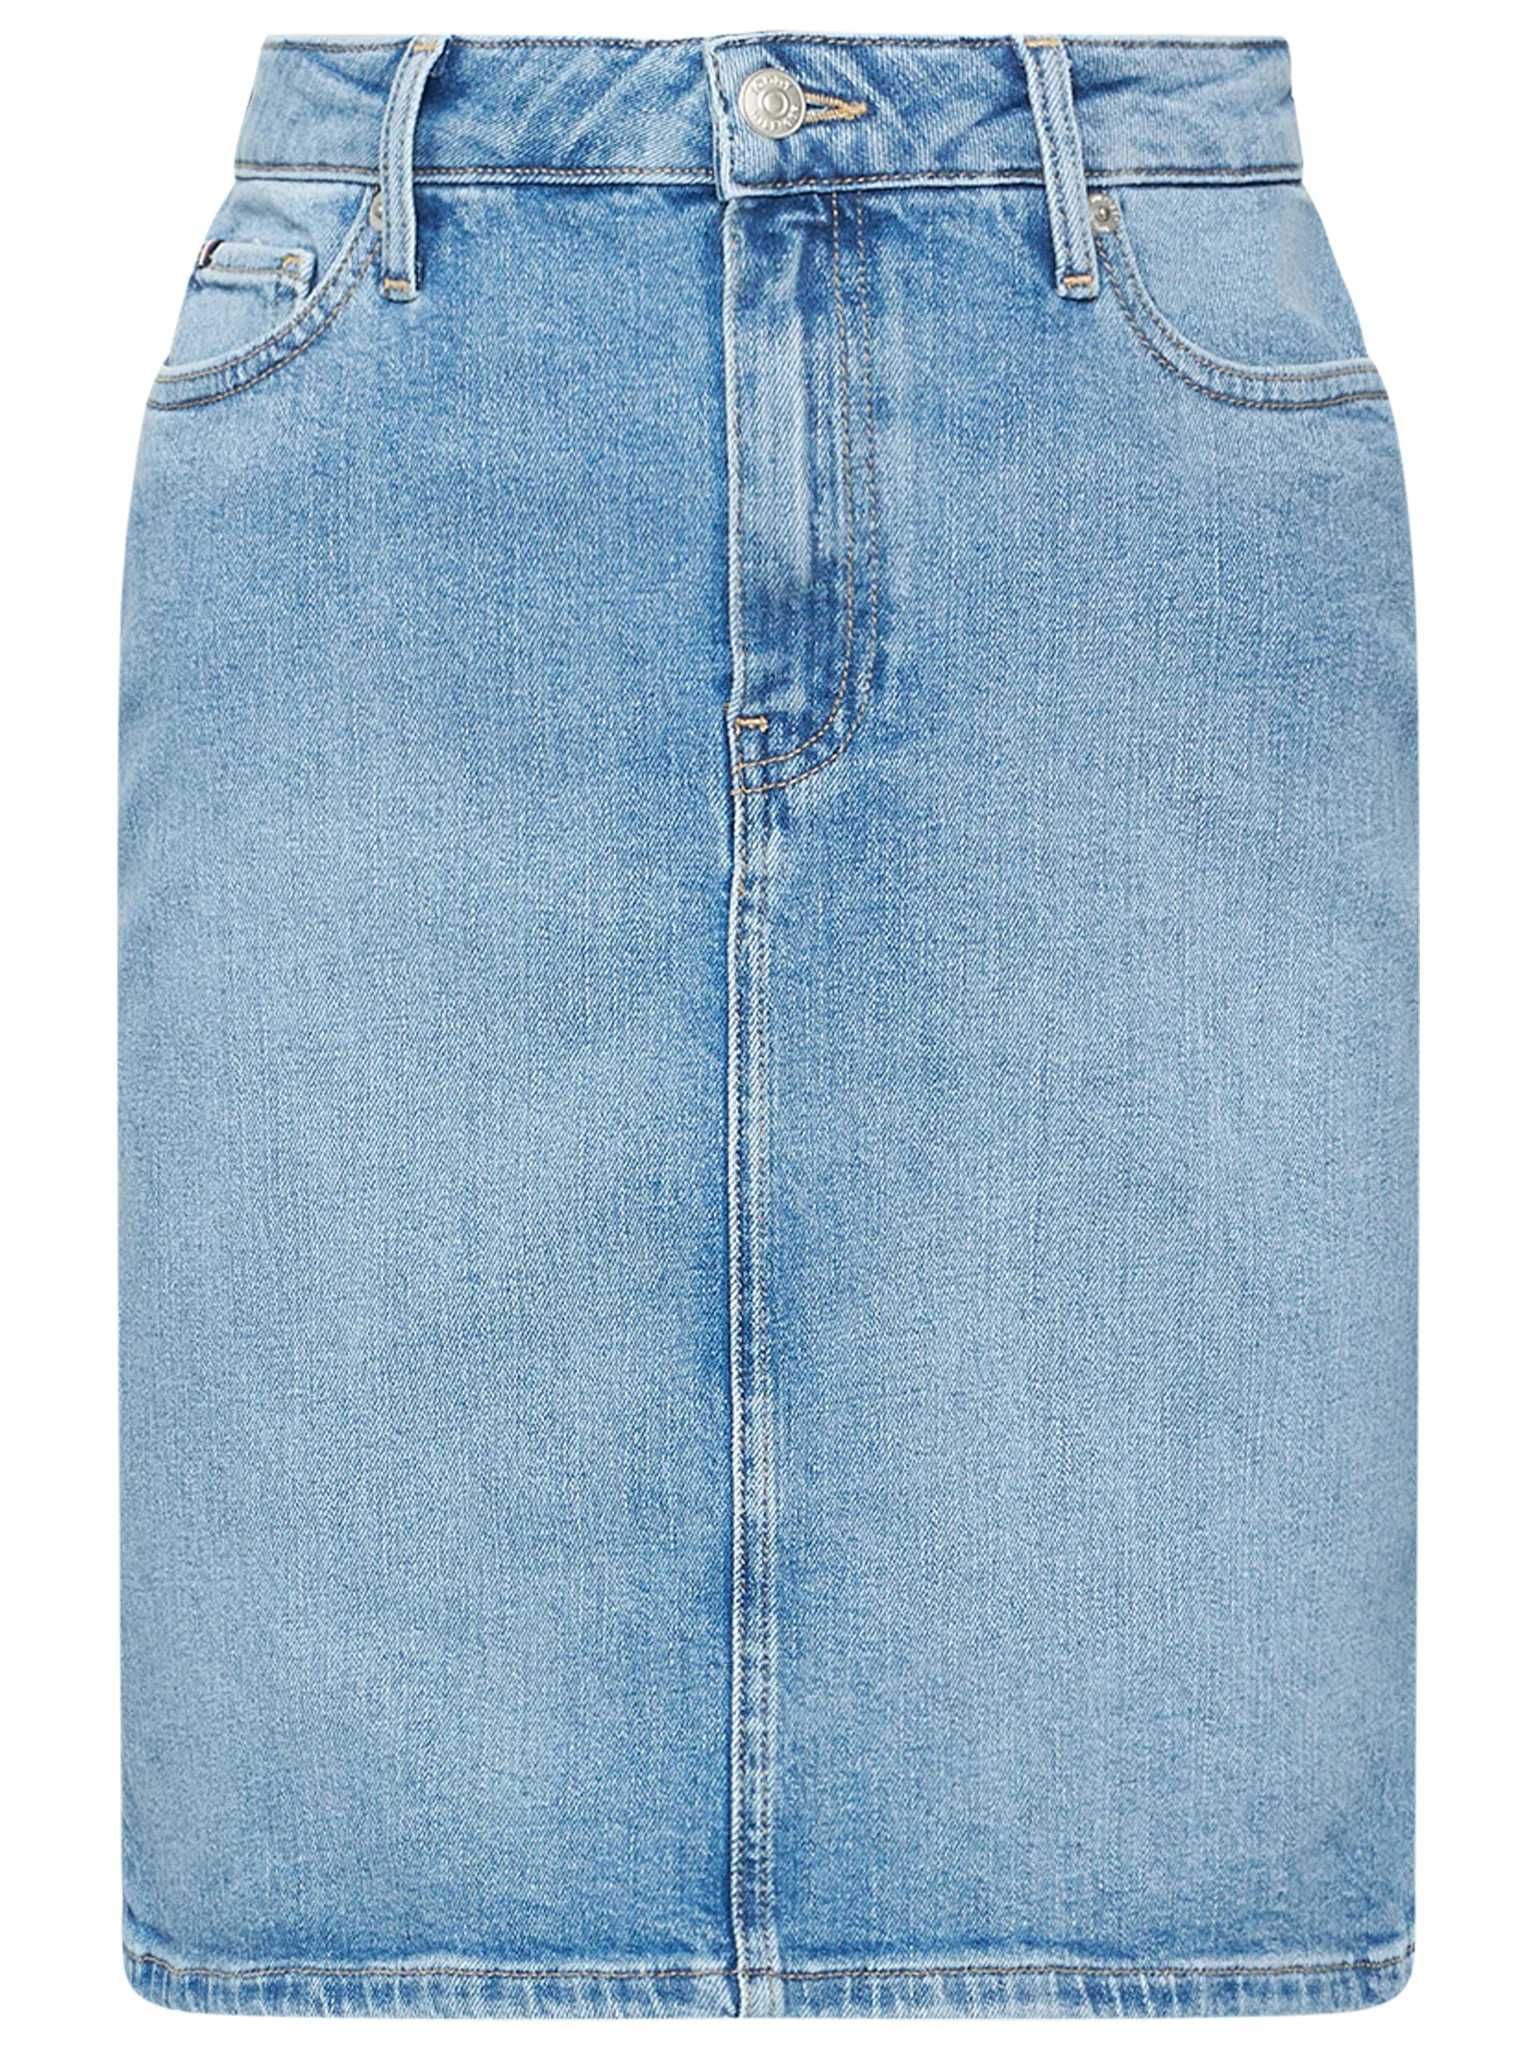 Tommy Hilfiger spódnica jeansowa 34 XS bawełna